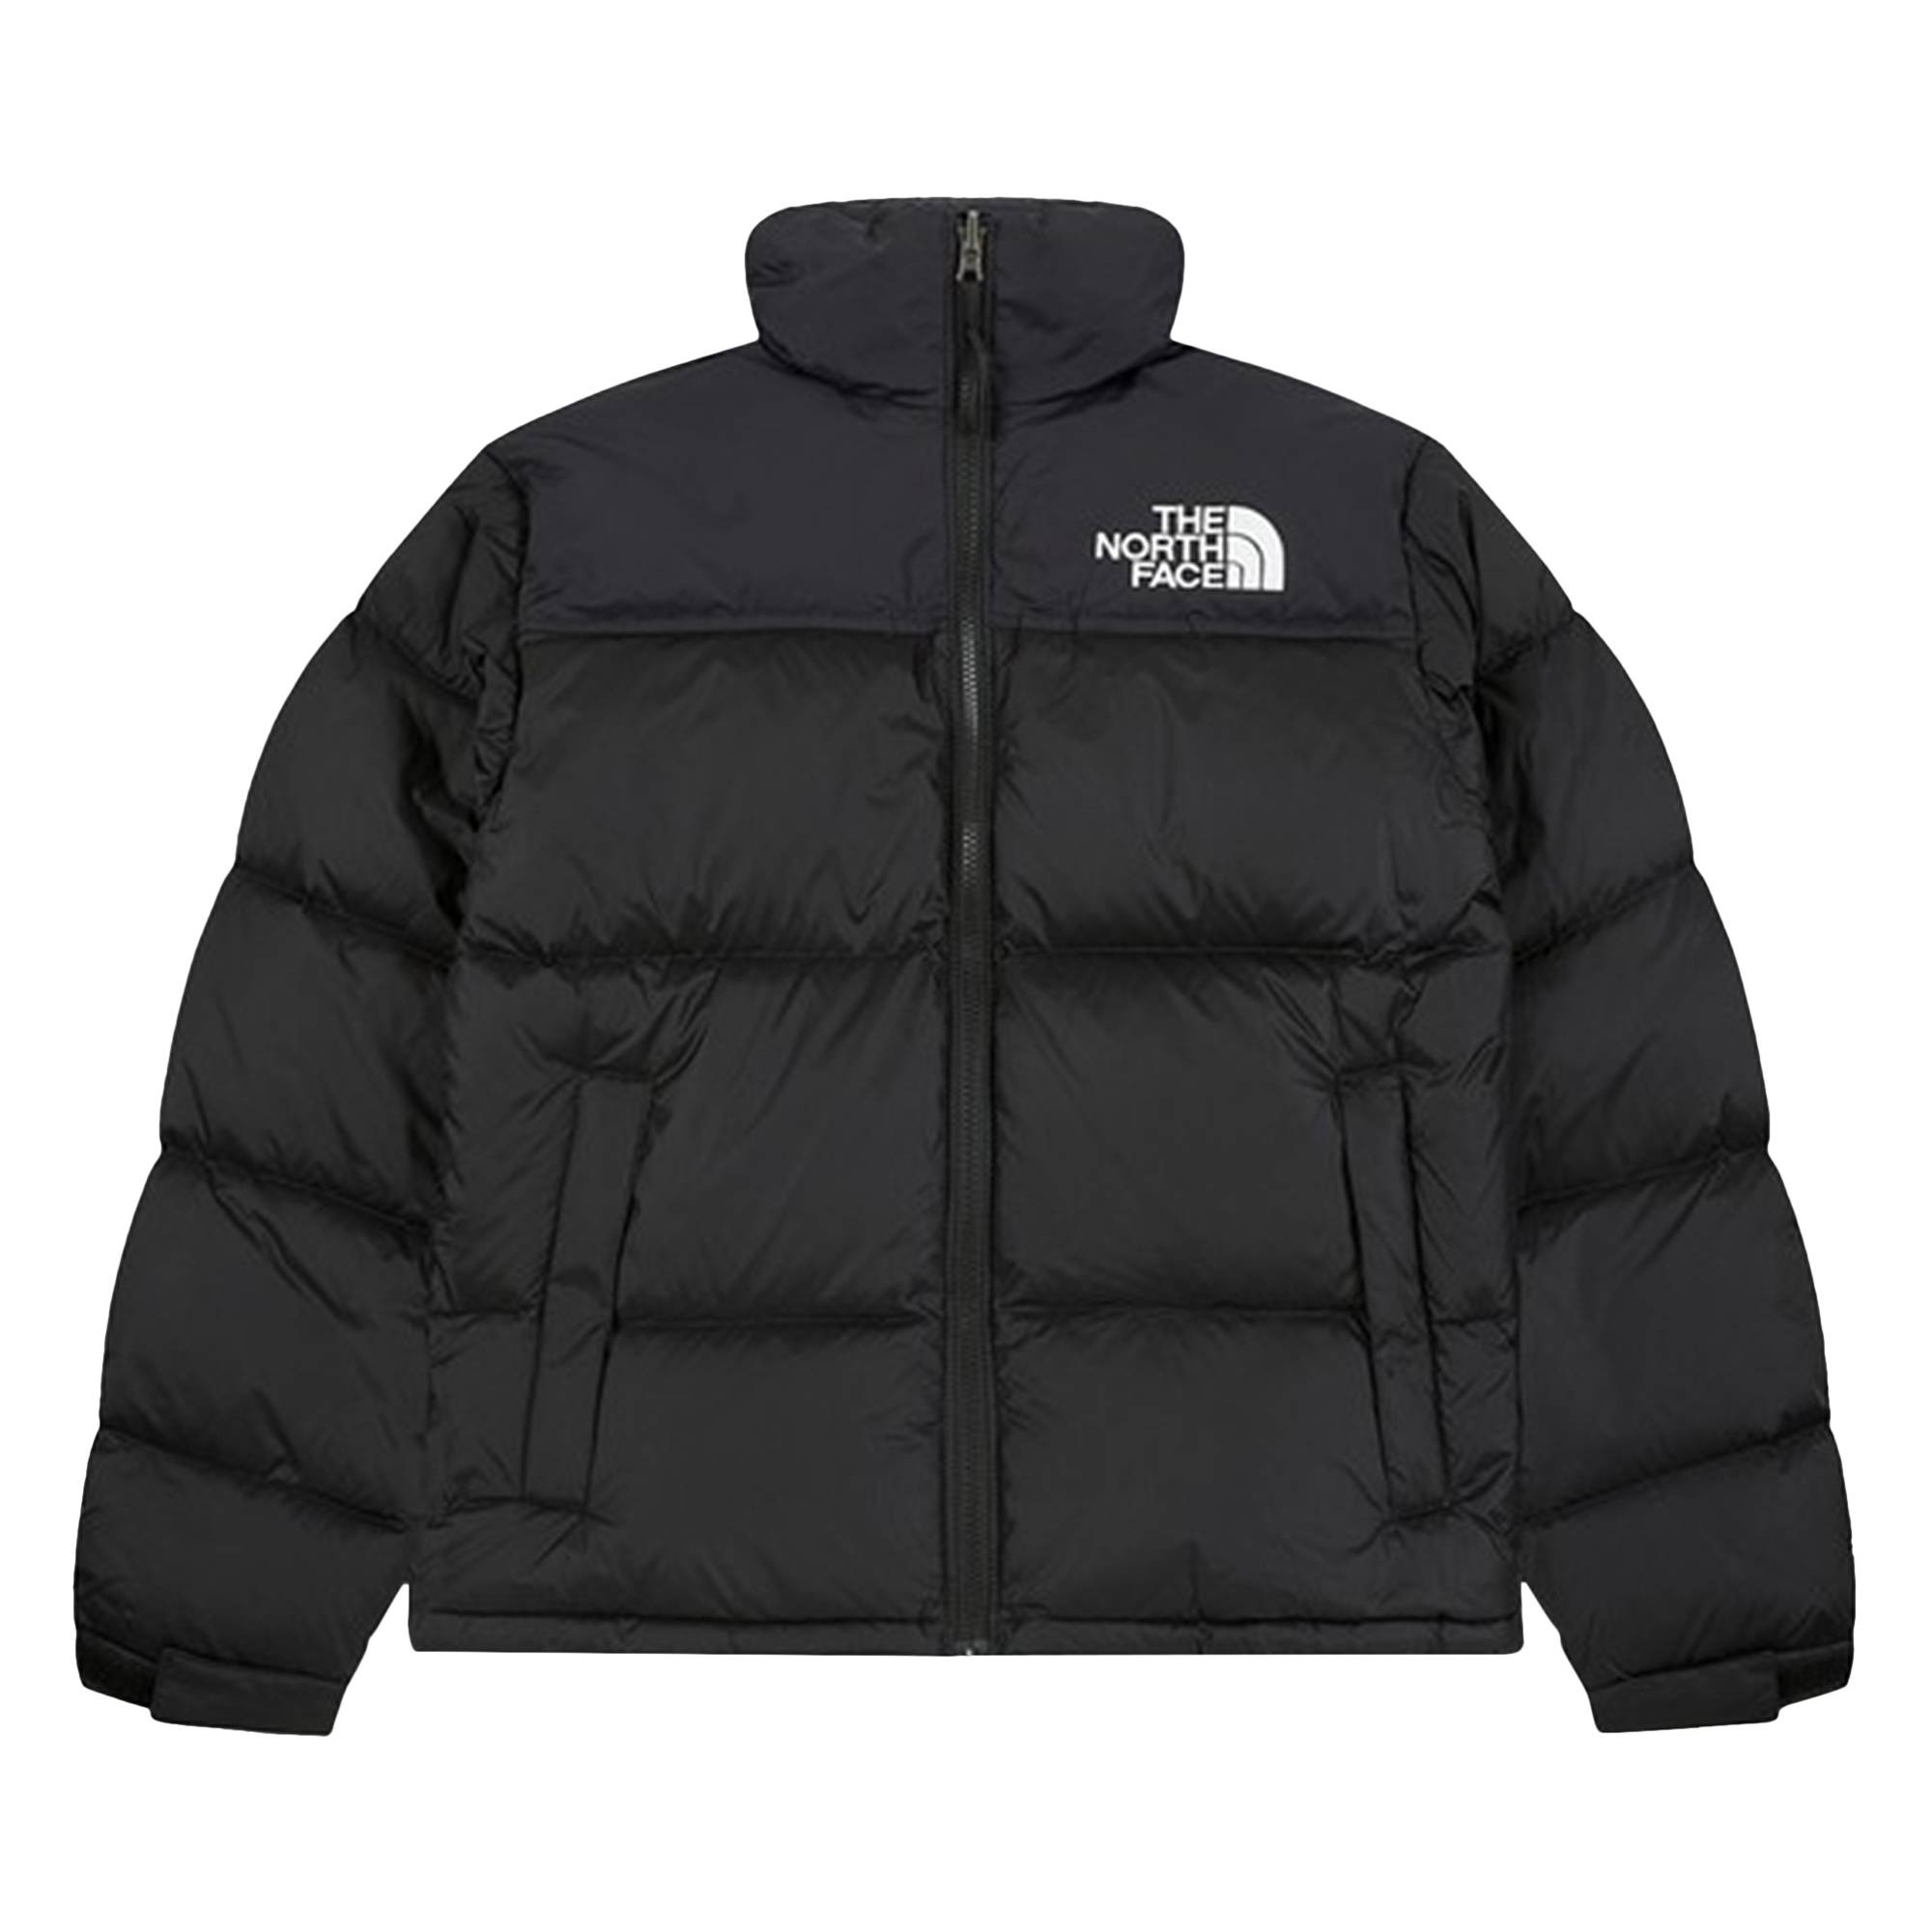 The North Face 1996 Retro Nuptse Jacket 'Black' - 1